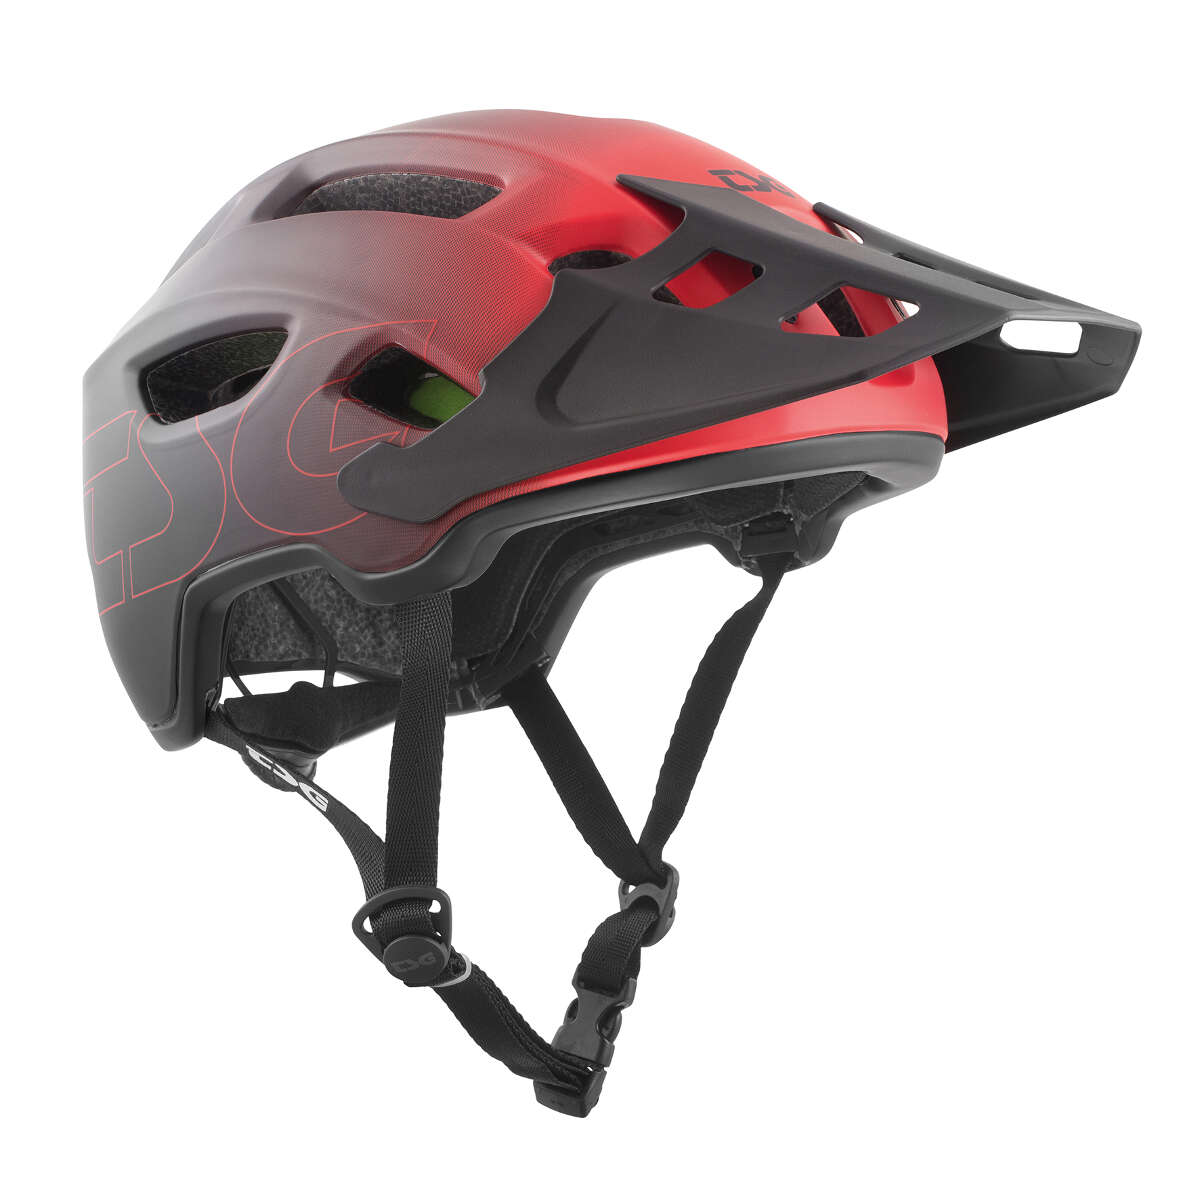 TSG Enduro MTB Helmet Trailfox Graphic Design - Fade To Red